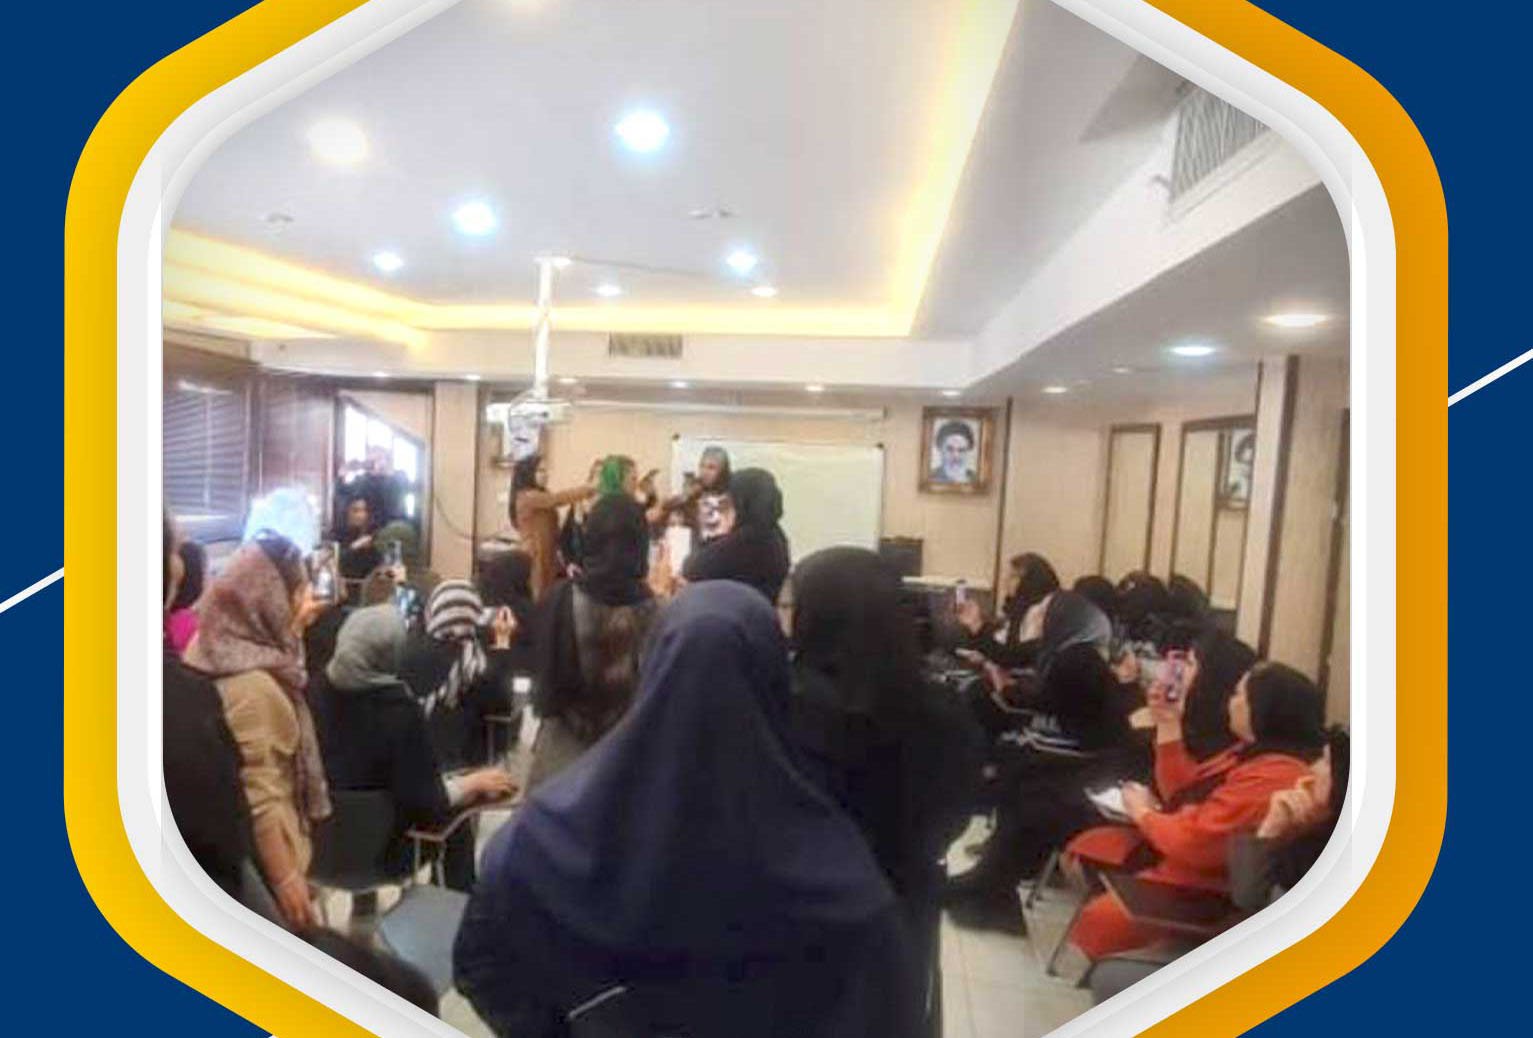 به مناسبت دهه فجر کلاس رایگان برای ۱۰۰ نفر از اعضای محترم اتحادیه در محیط آموزشی اتحادیه آرایشگران زنانه شیراز برگزار گردید